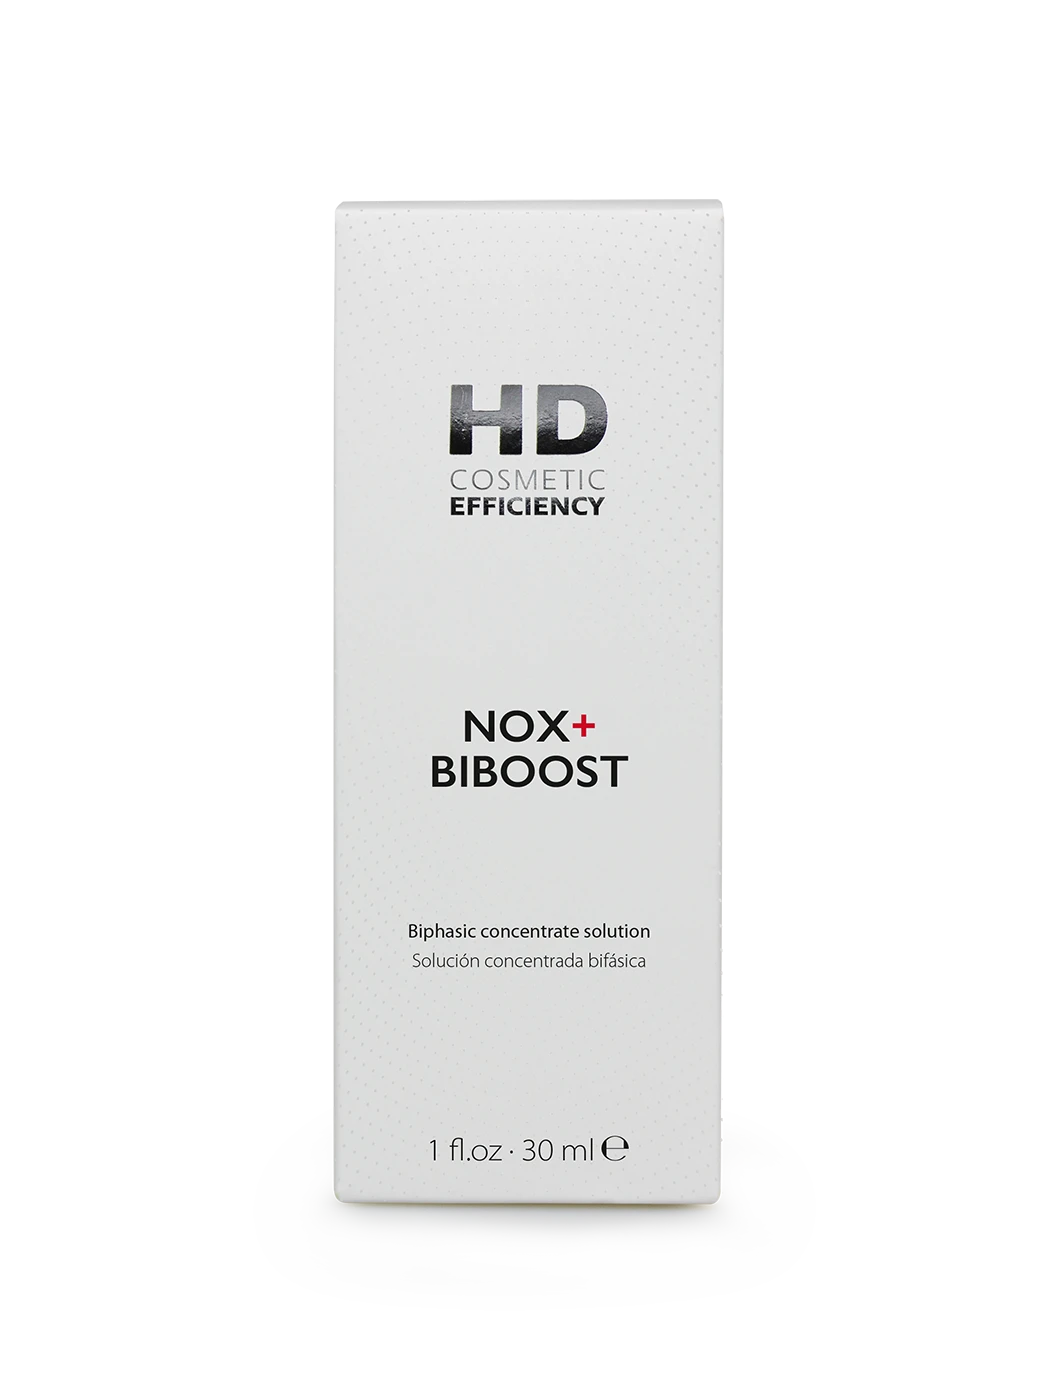 NOX+ BIBOOST packaging